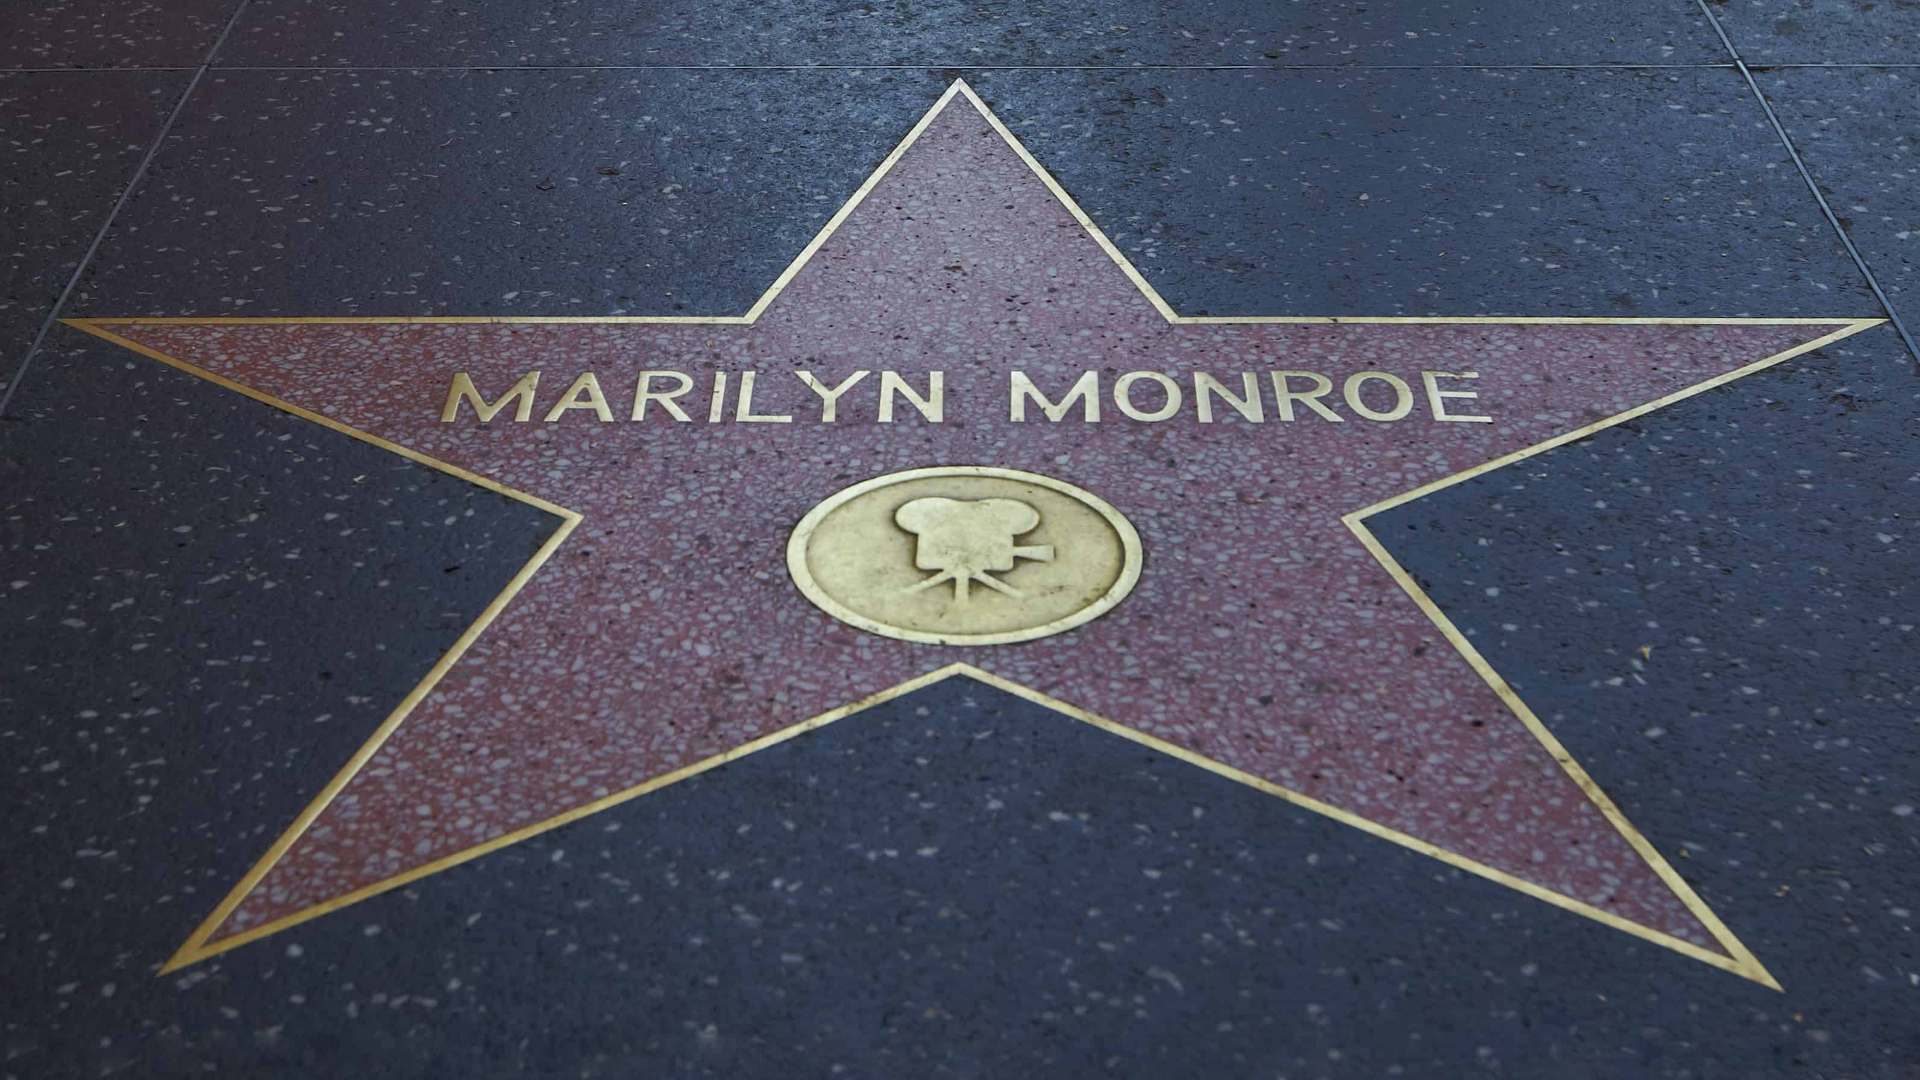 O provedor de jogos IGT adquiriu direitos de imagem de Marilyn Monroe para produtos de loteria omnicanal.